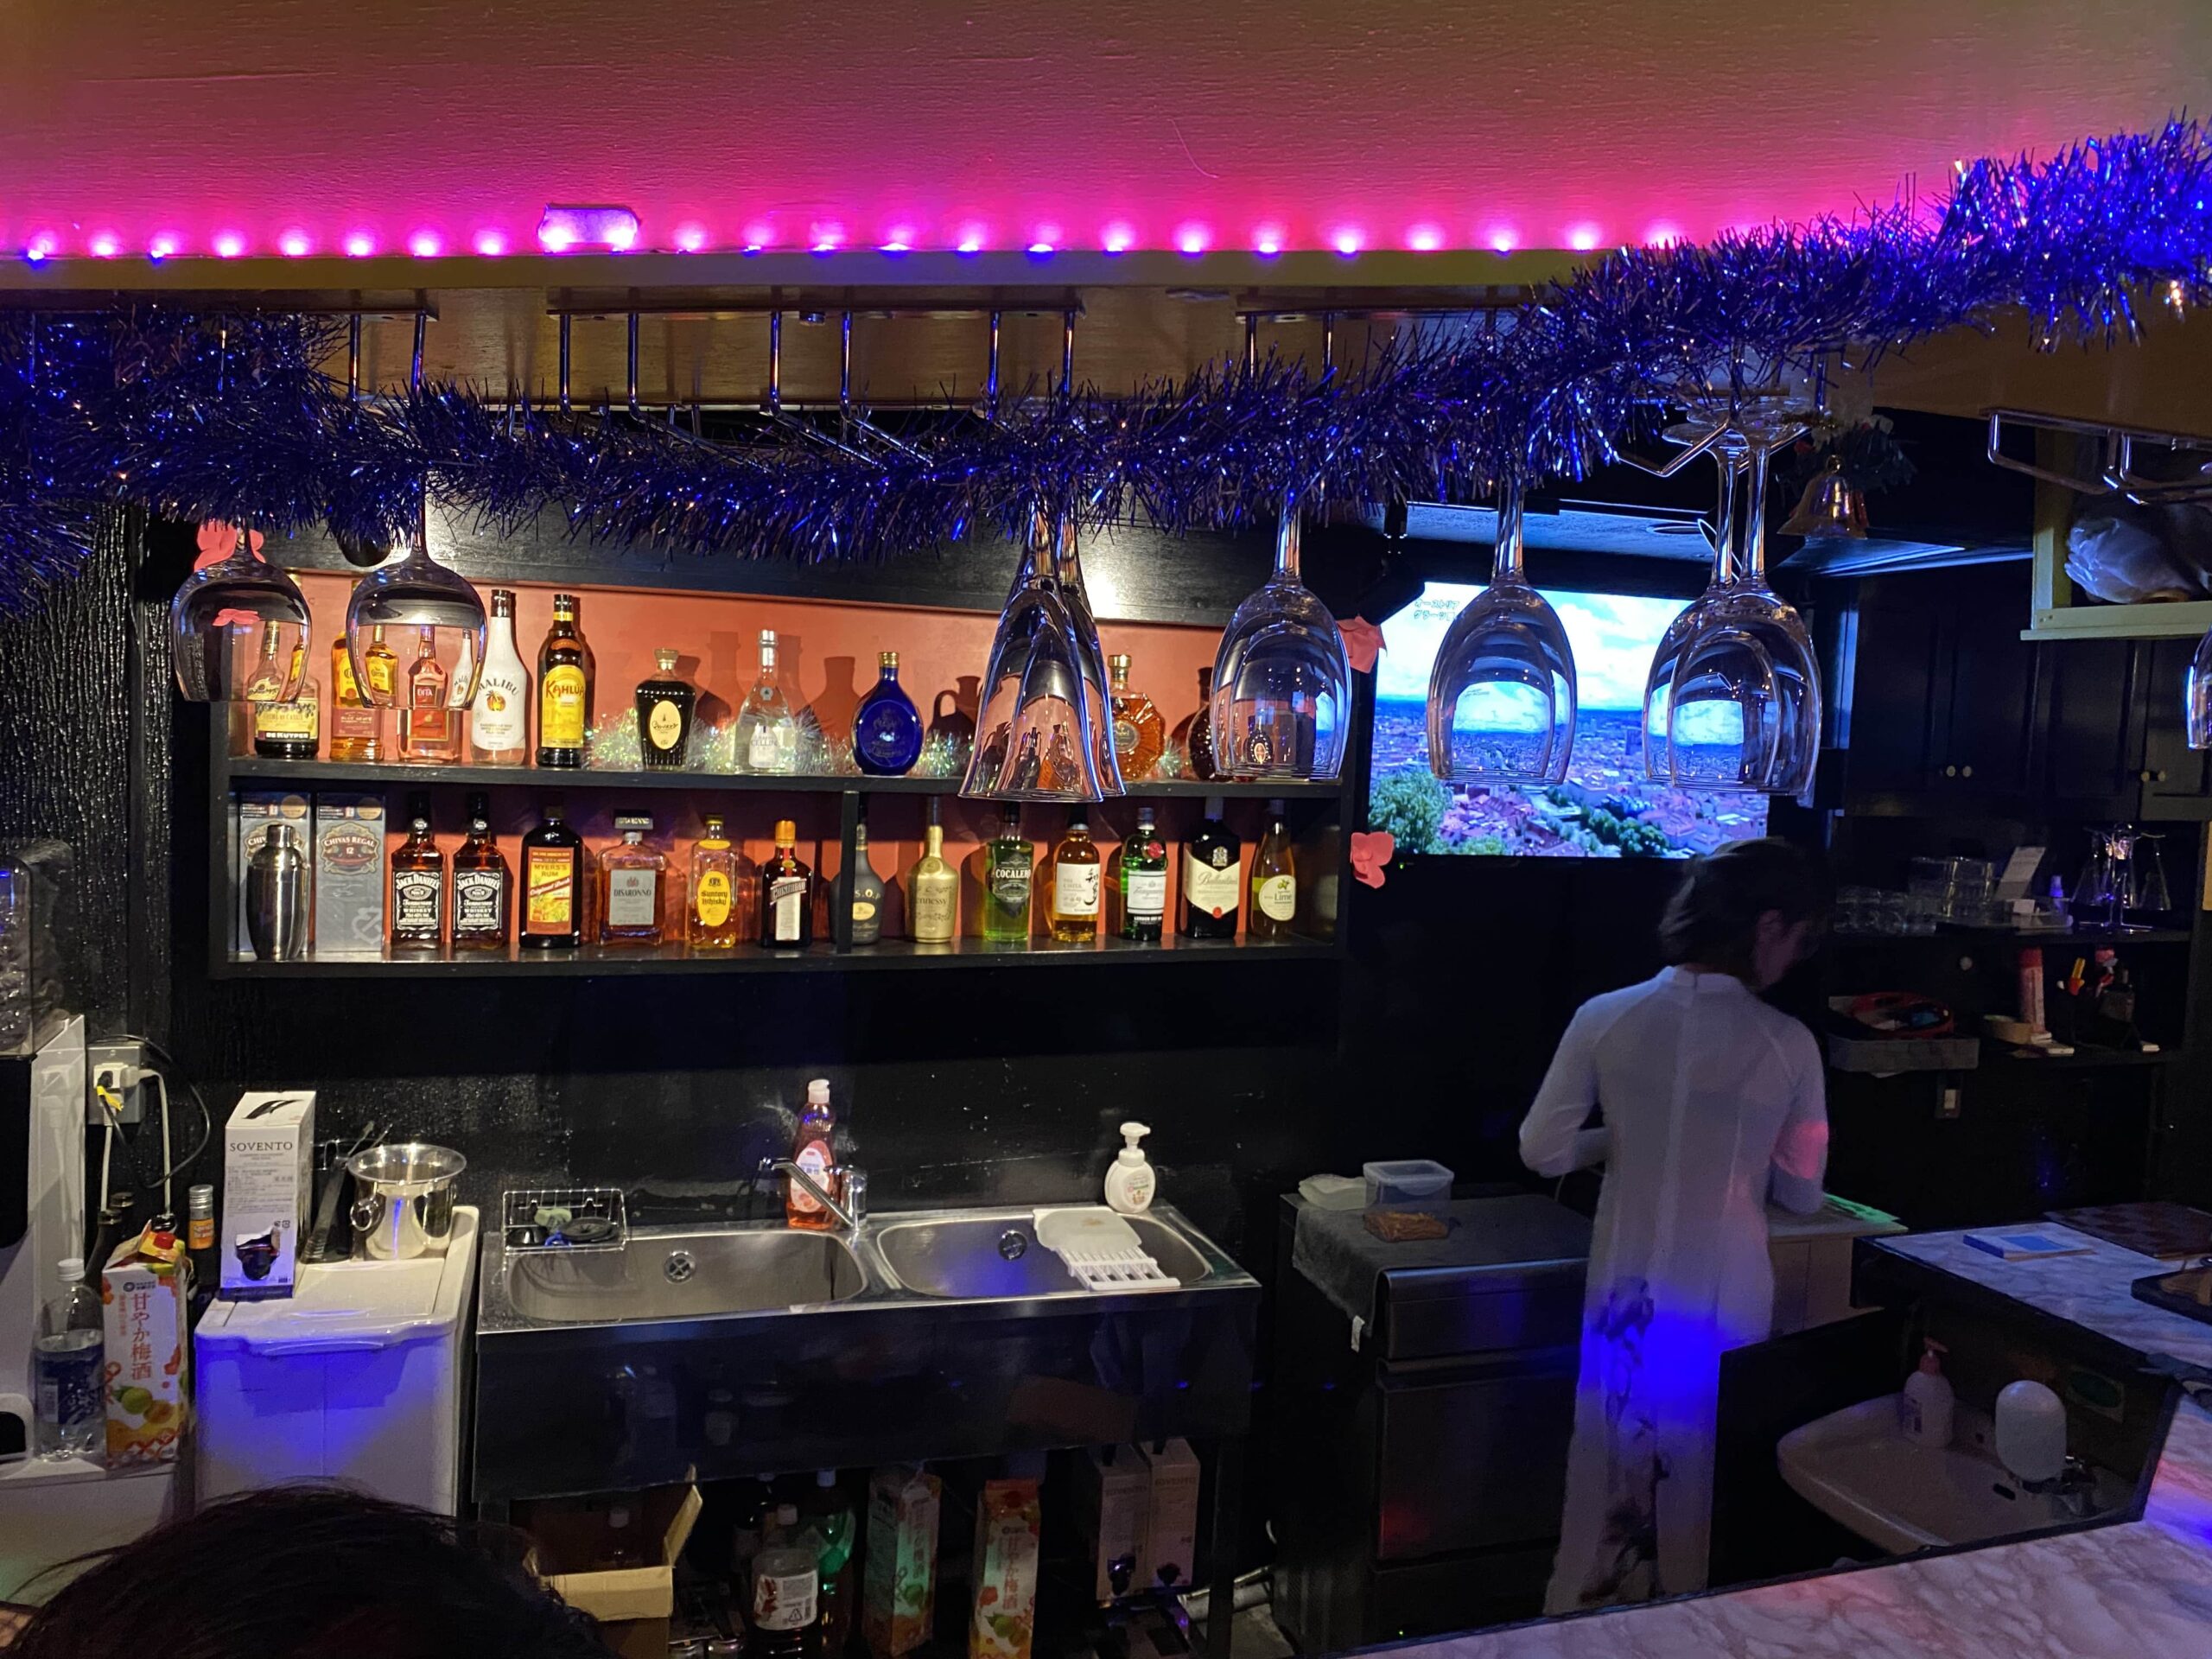 Bar Royal ベトナムバー 東京 赤羽 ベトナム美人と飲める店 アオザイバー ガールズバー特集